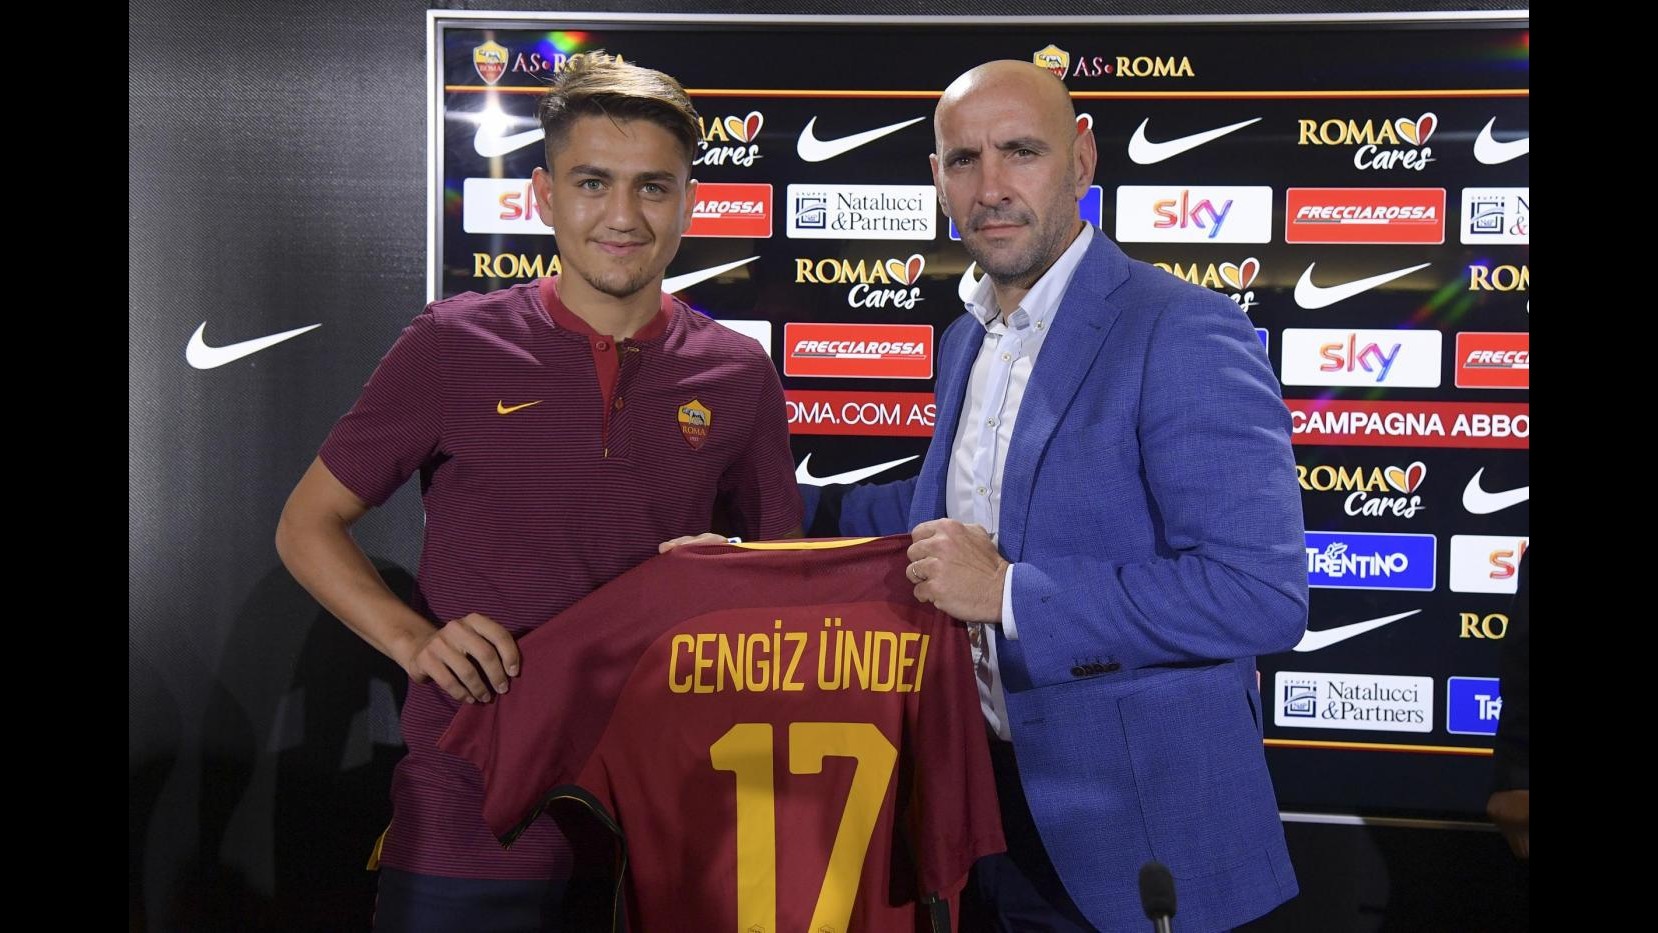 FOTO Roma, Cengiz Under è un nuovo giocatore giallorosso